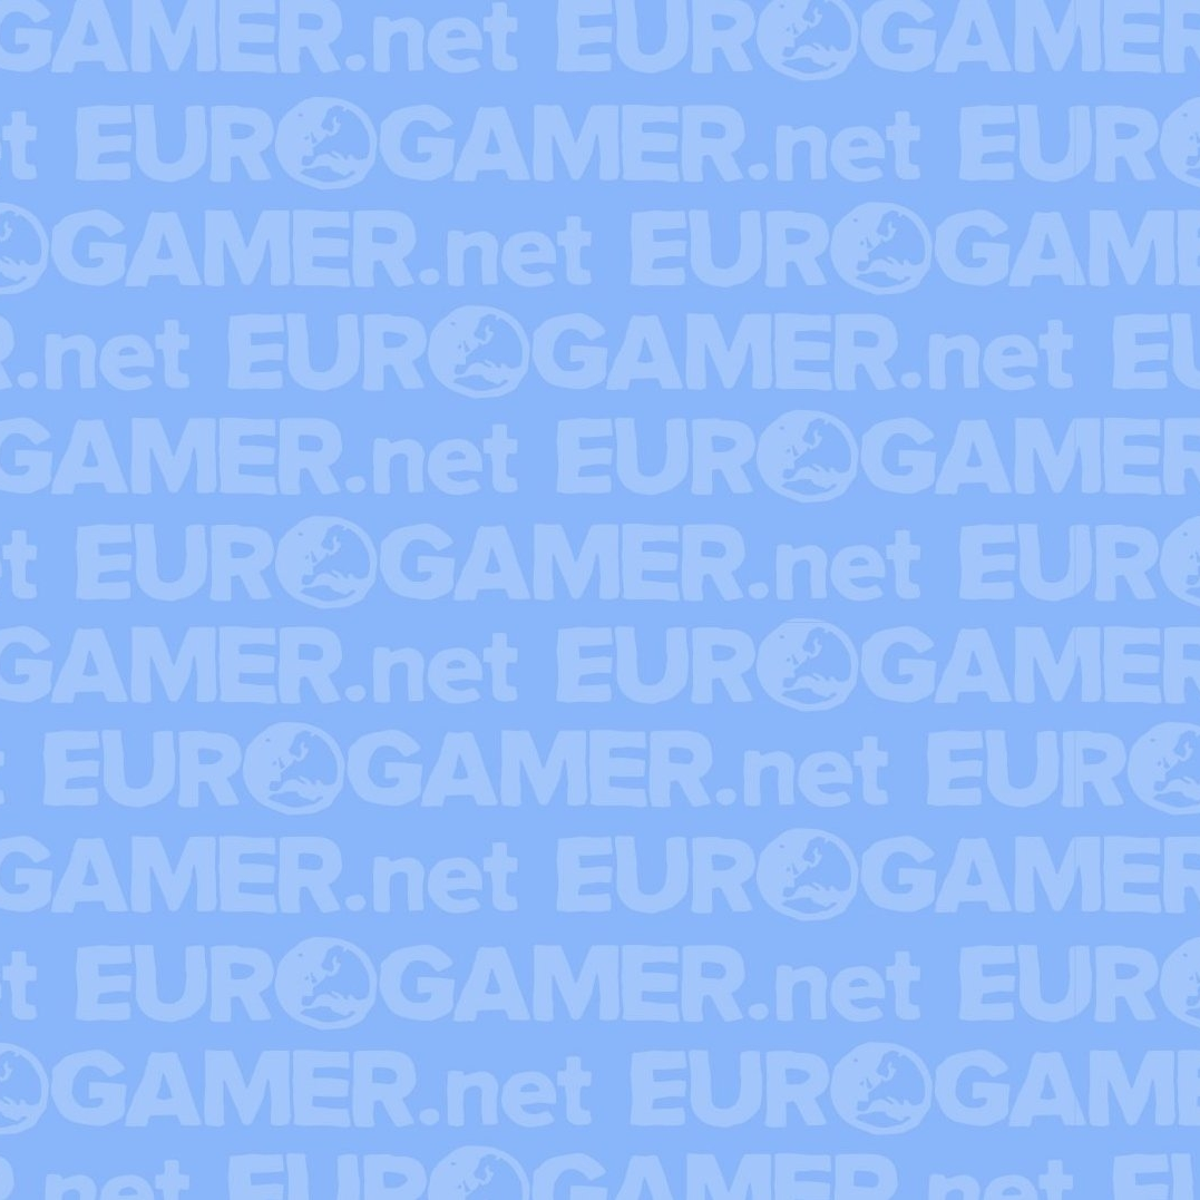 Eurogamer is hiring